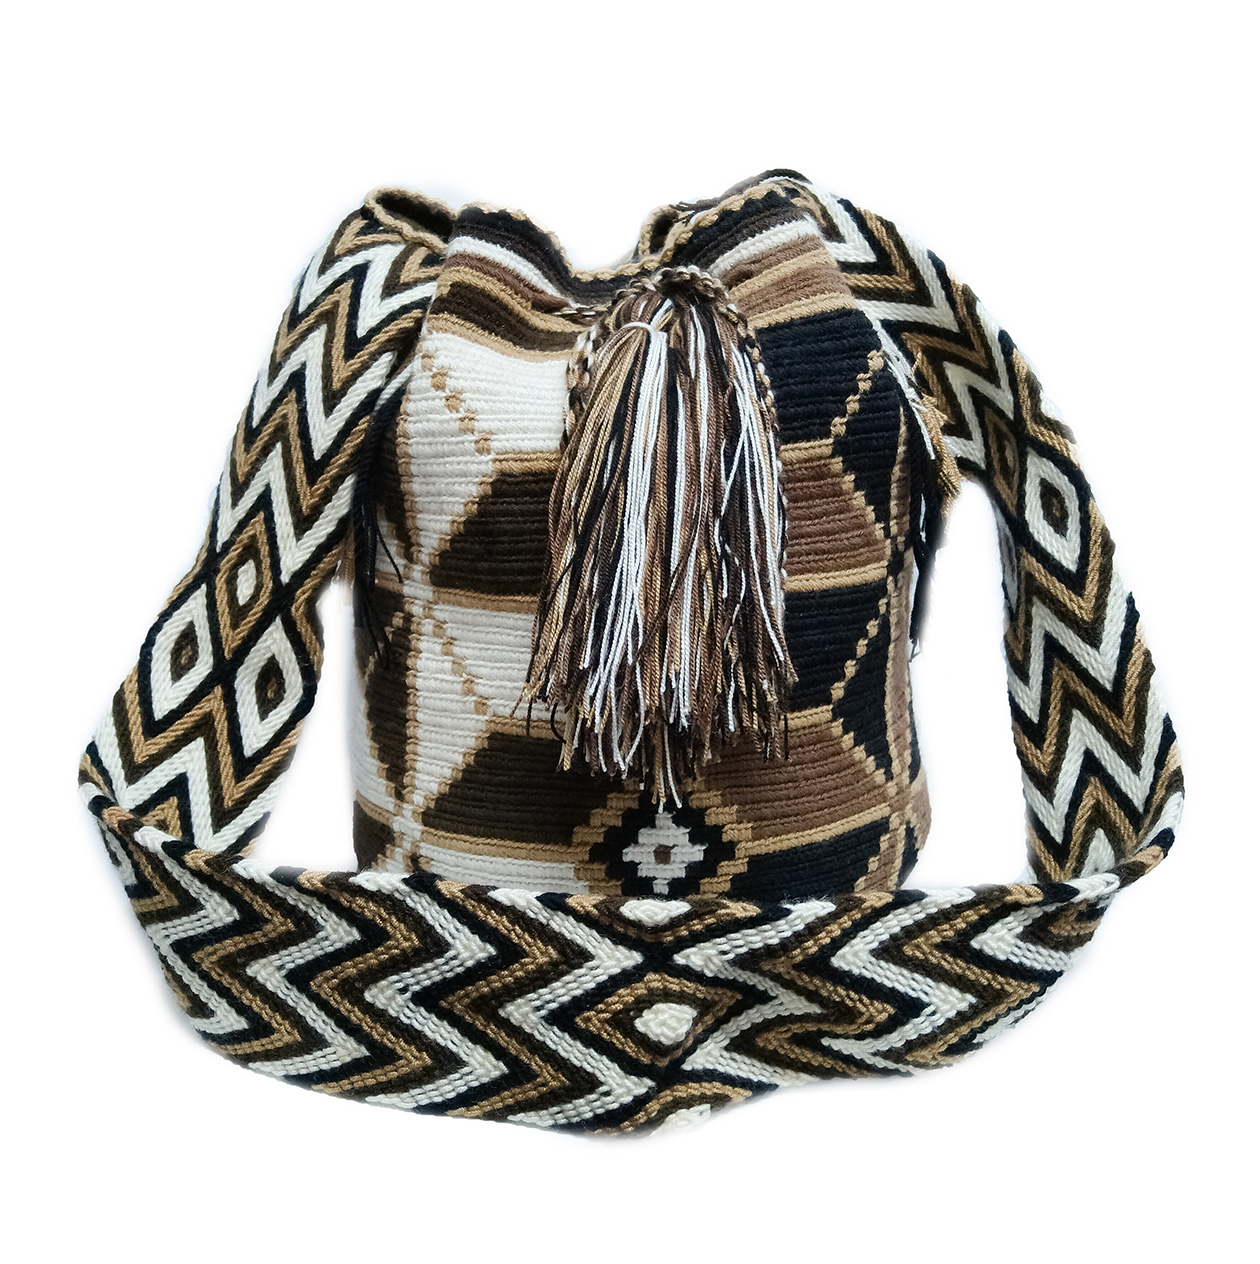 Colombian Wayuu Mochila Bags Online sale - Wayuu Mochila Bag in brown earth tones